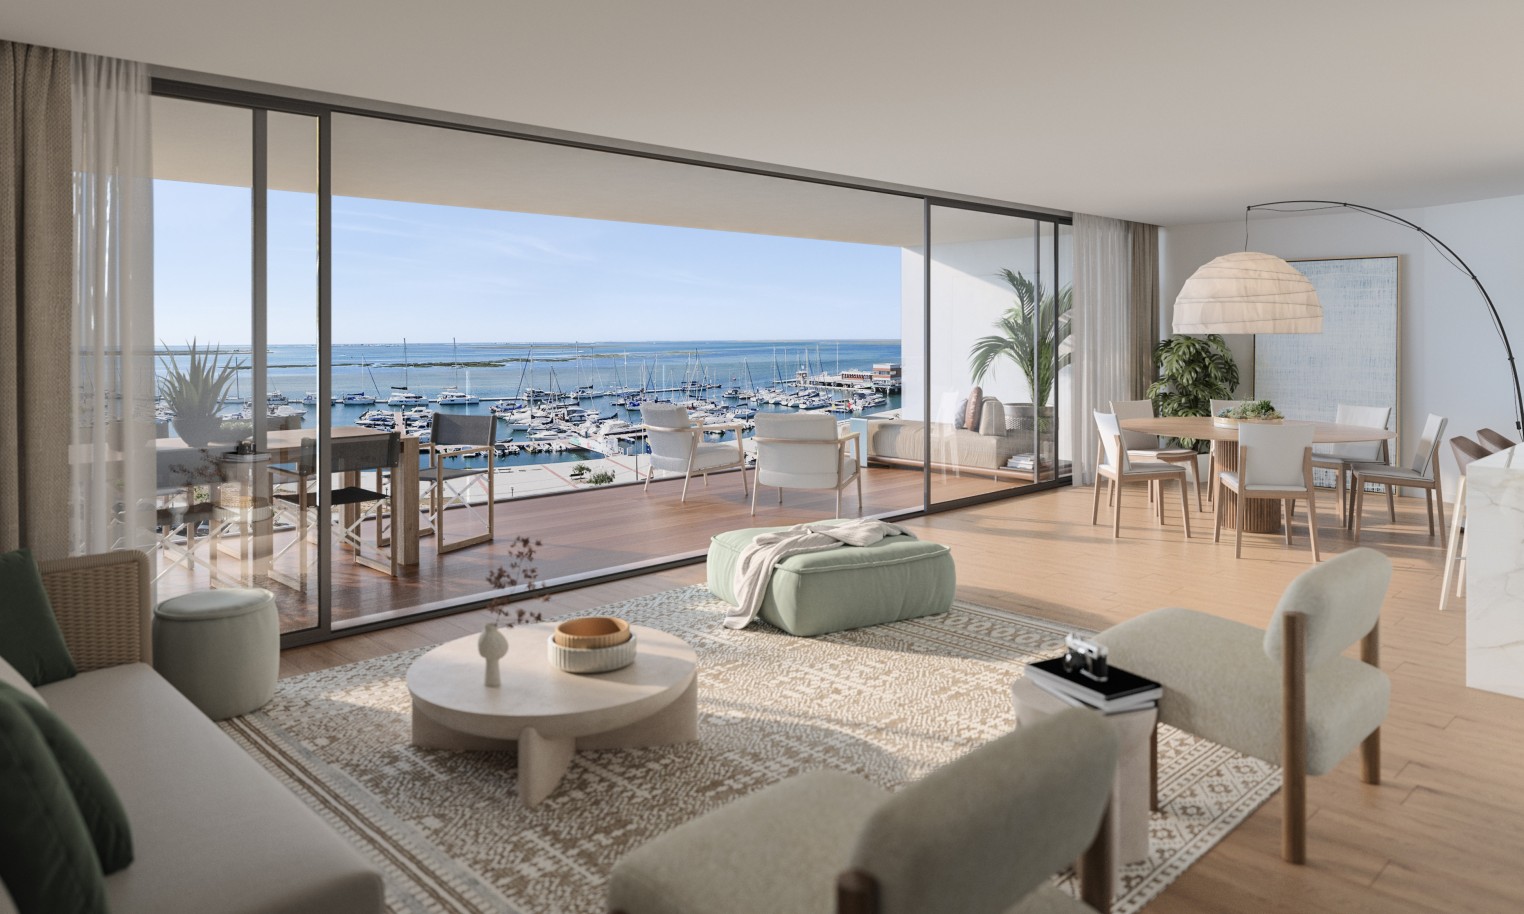 Appartements neufs avec vue sur mer, 1, 2 & 3 chambres, à vendre à Olhão, Algarve_243914